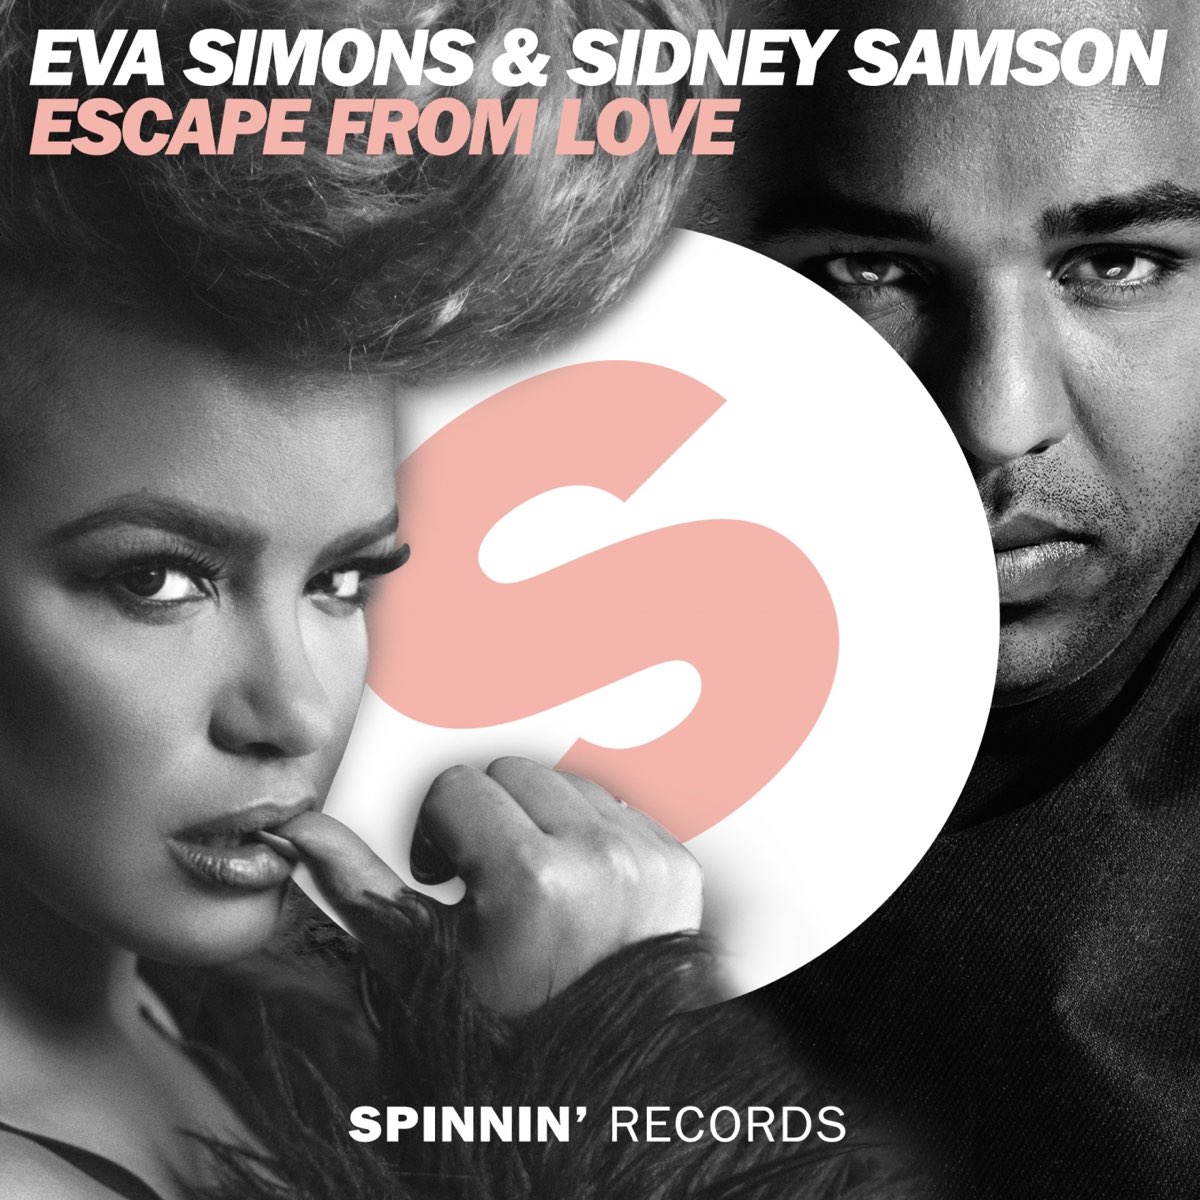 Eva Simons & Sidney Samson Escape from Love cover artwork